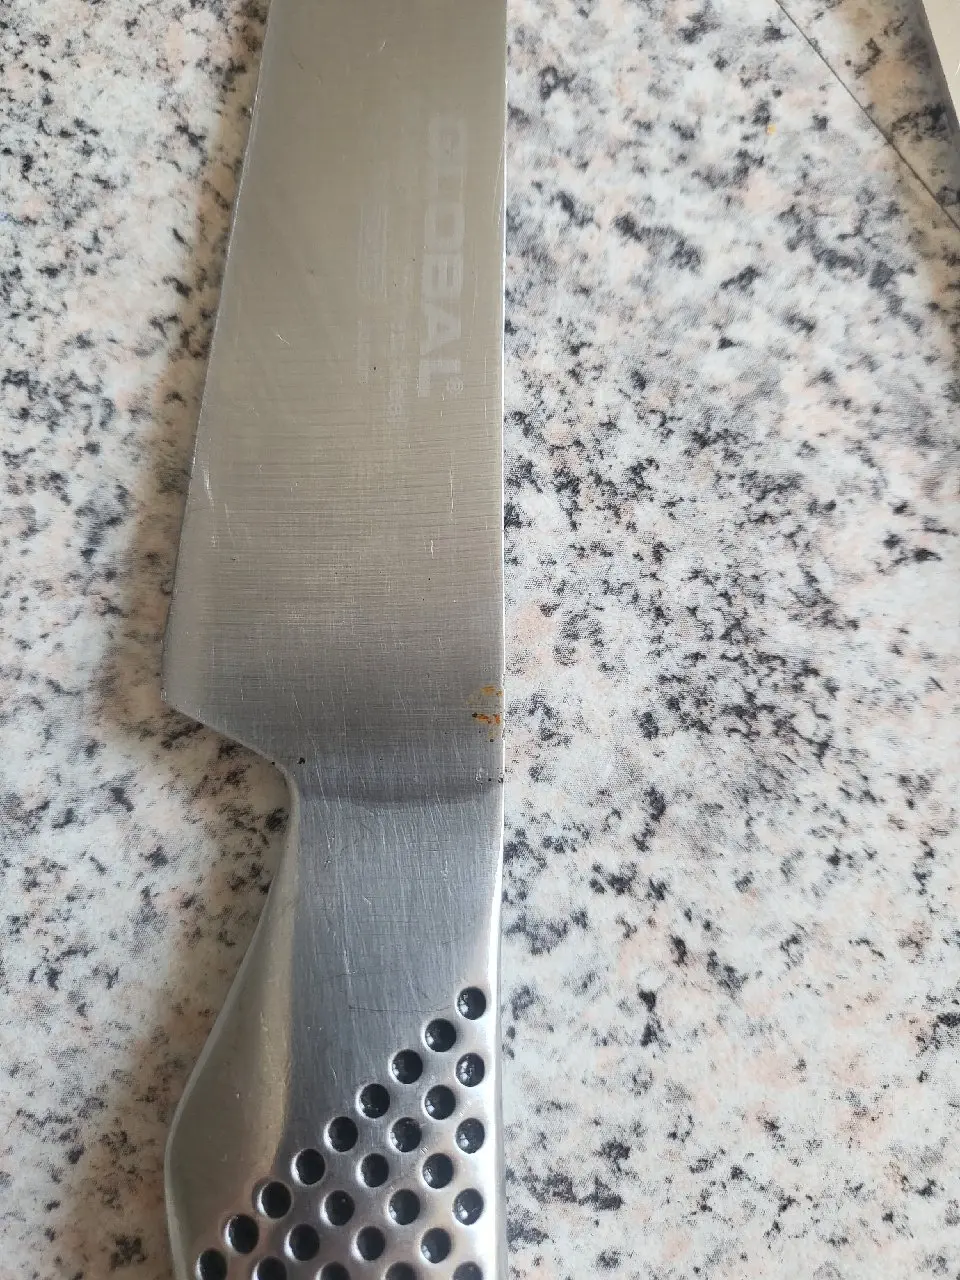 Global køkkenkniv